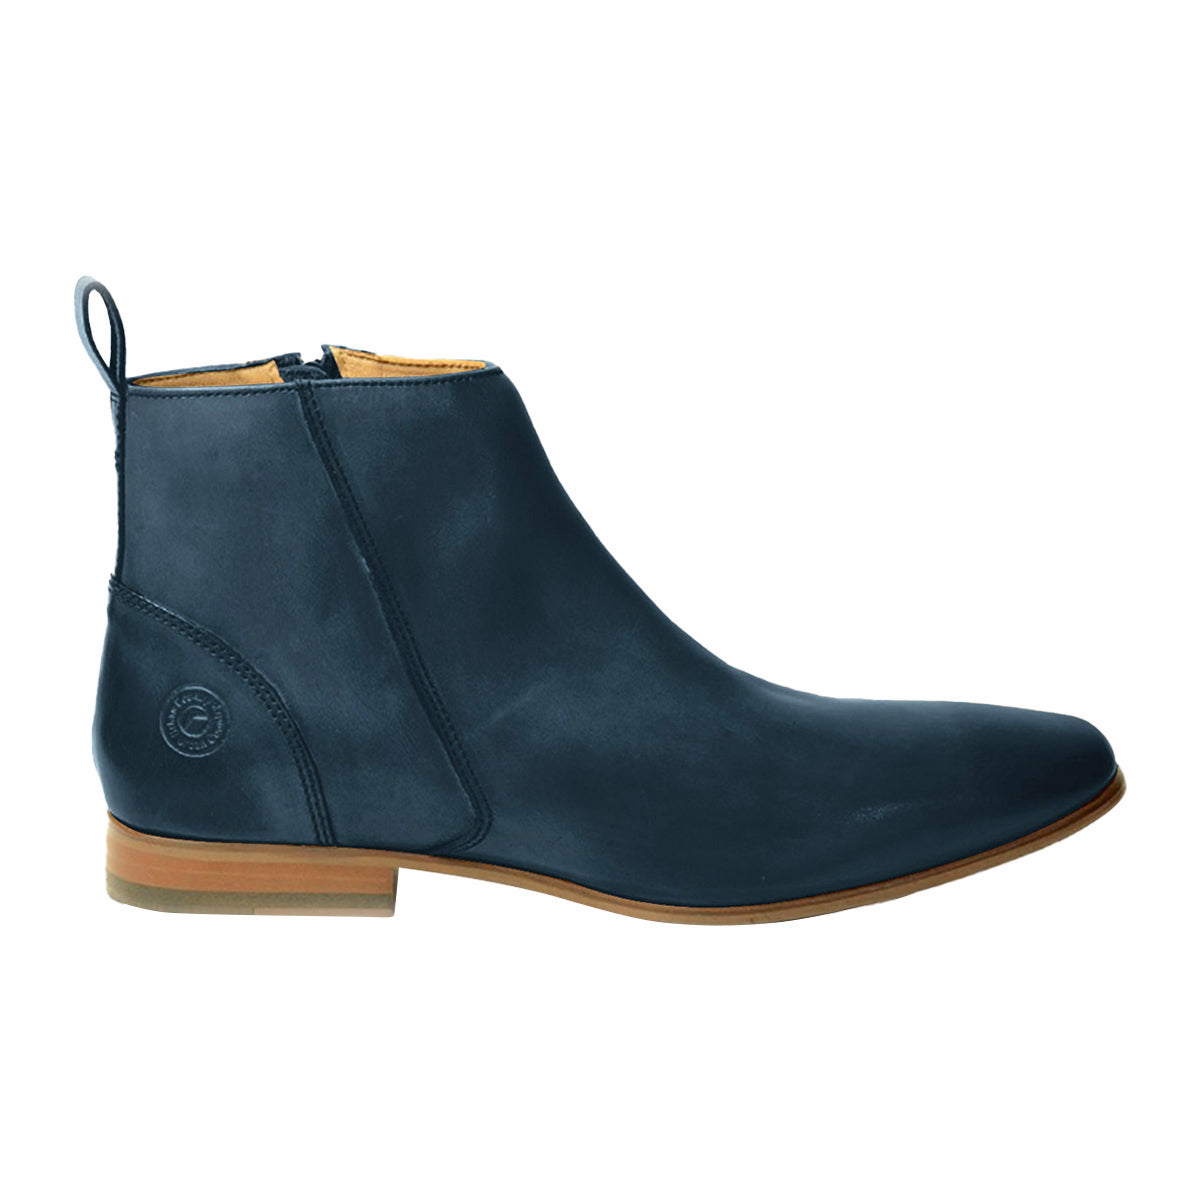 Men Leather Ankle Length Boots ǀ FLORIS 5177